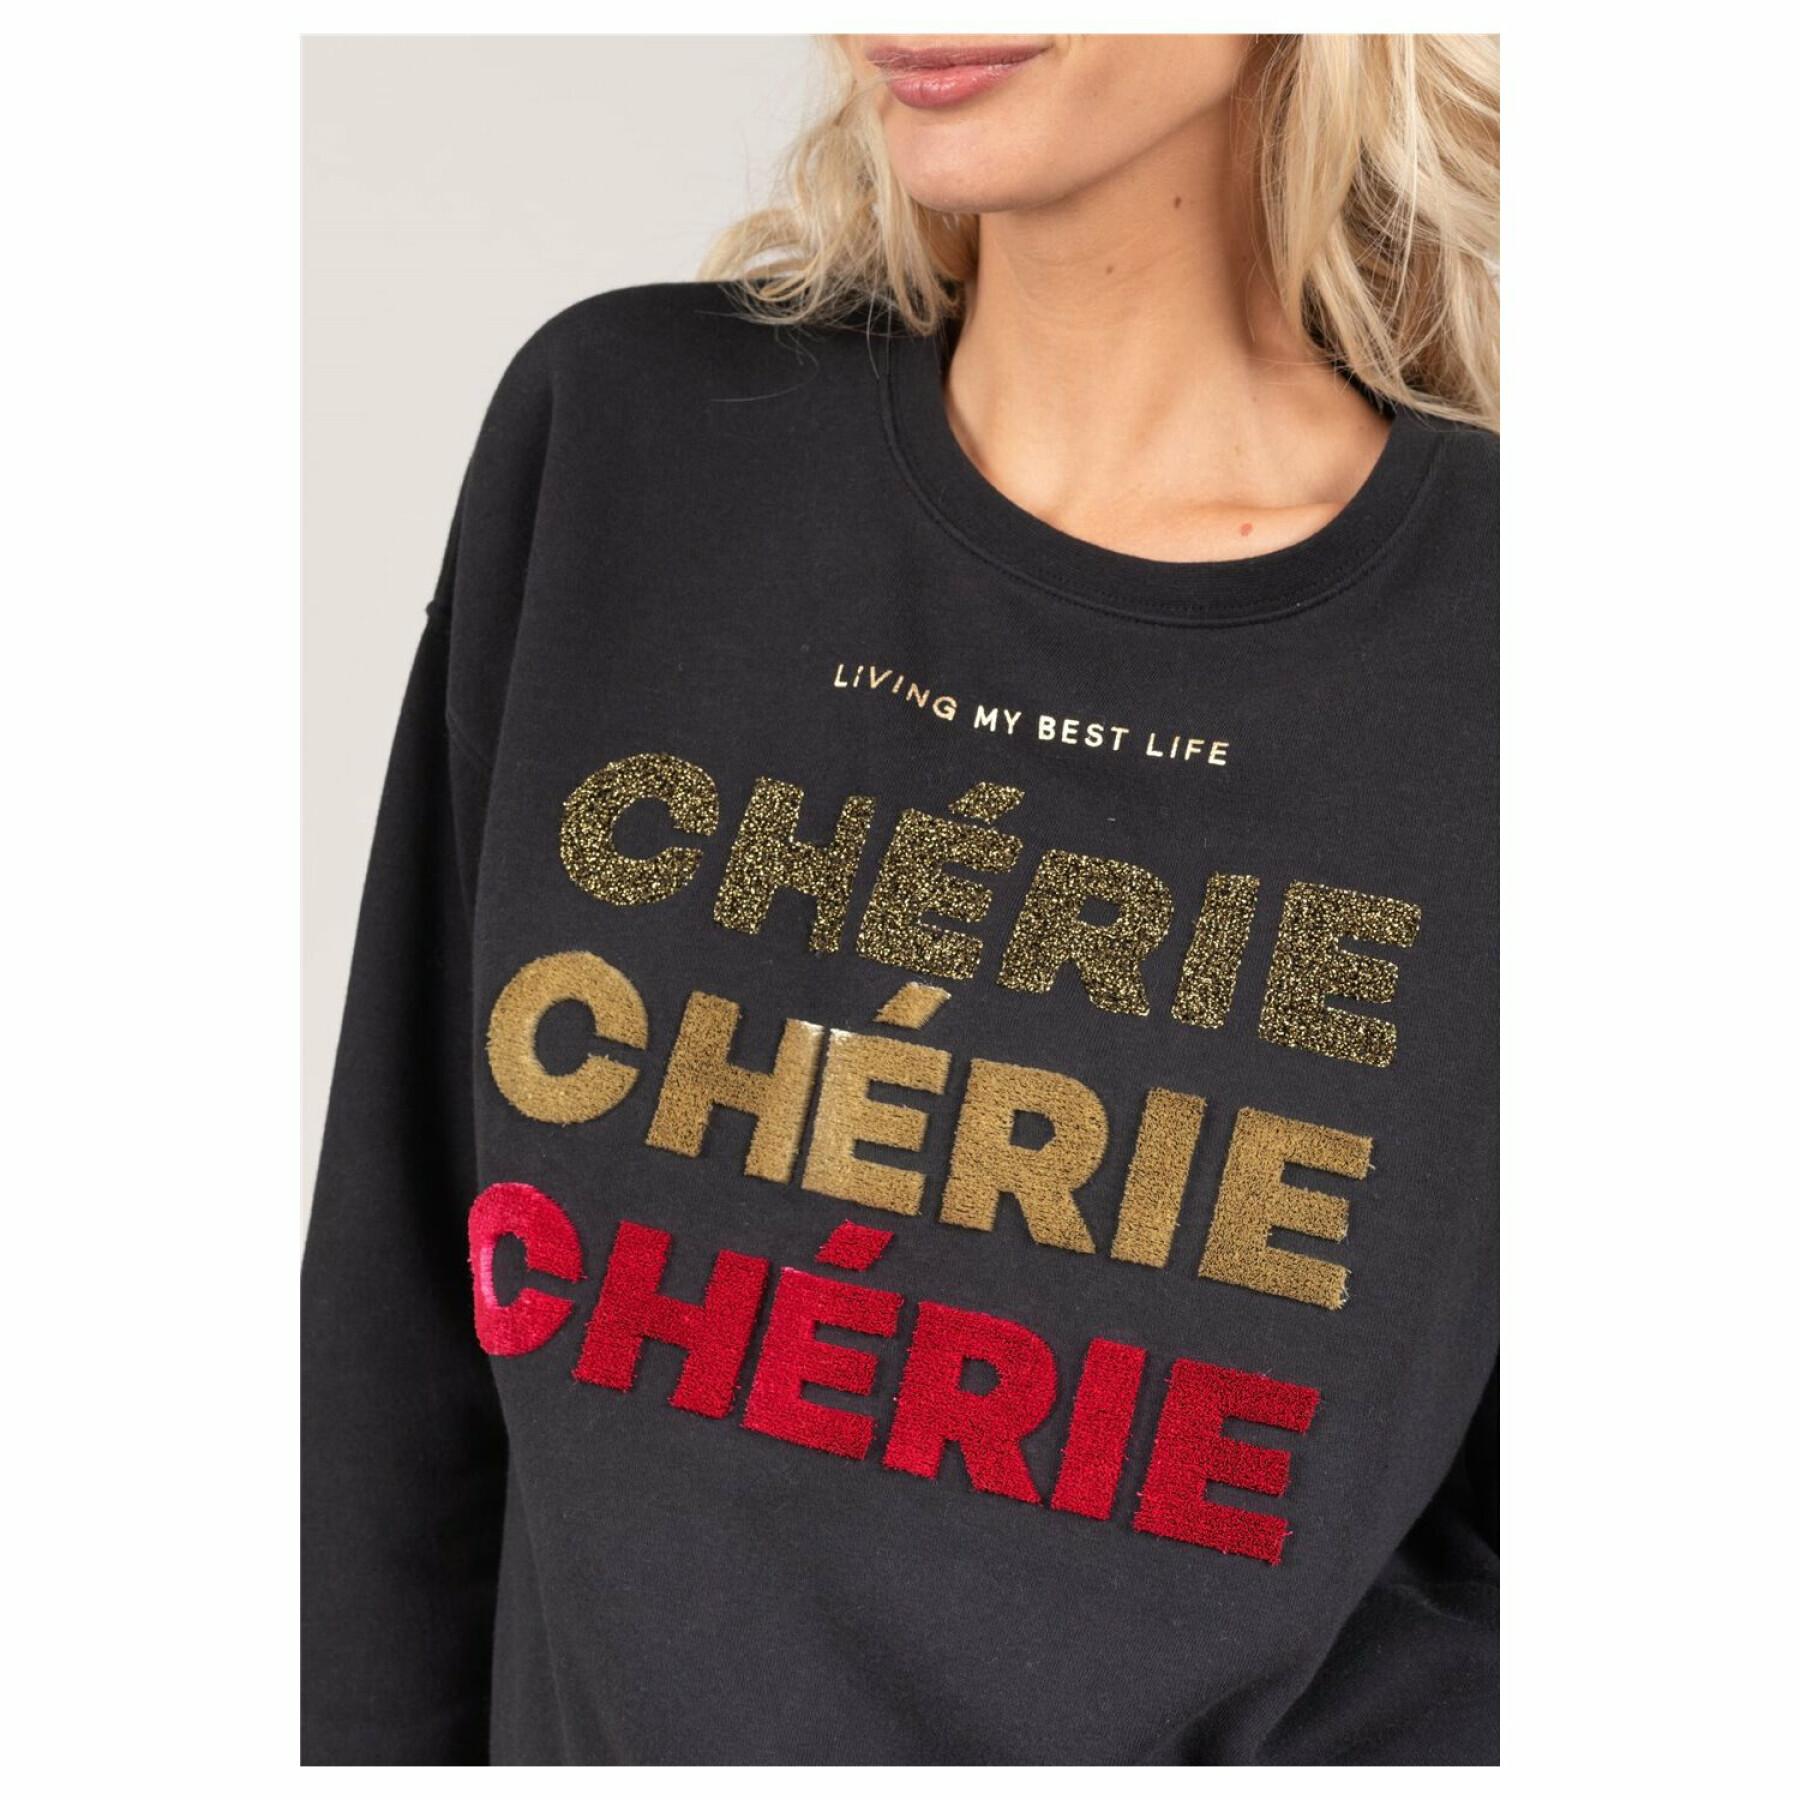 Dames sweatshirt Deeluxe Cherie